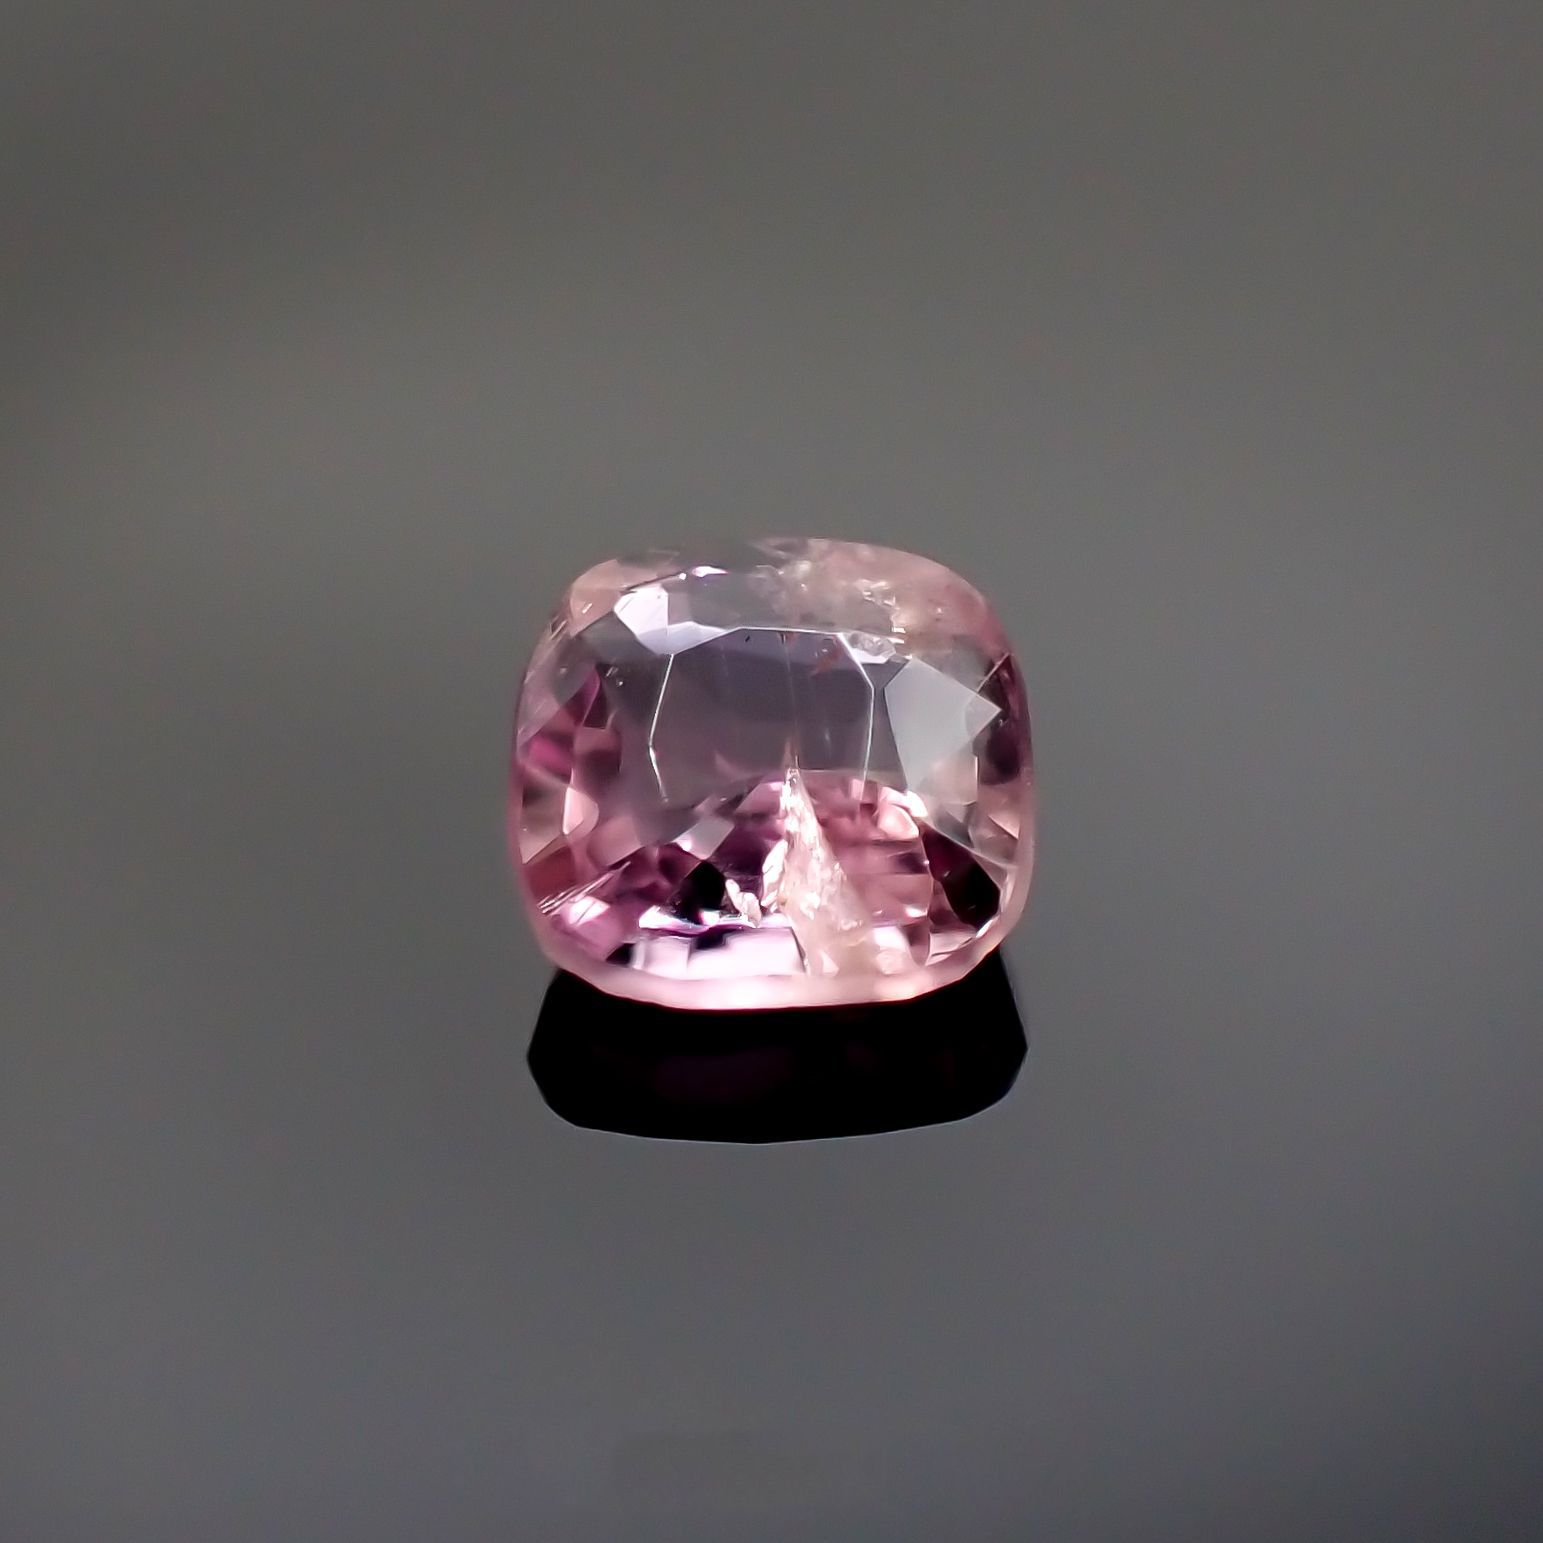 ピンクカラーの新しい宝石、ポードレッタイトについて解説 | TOP STONE 